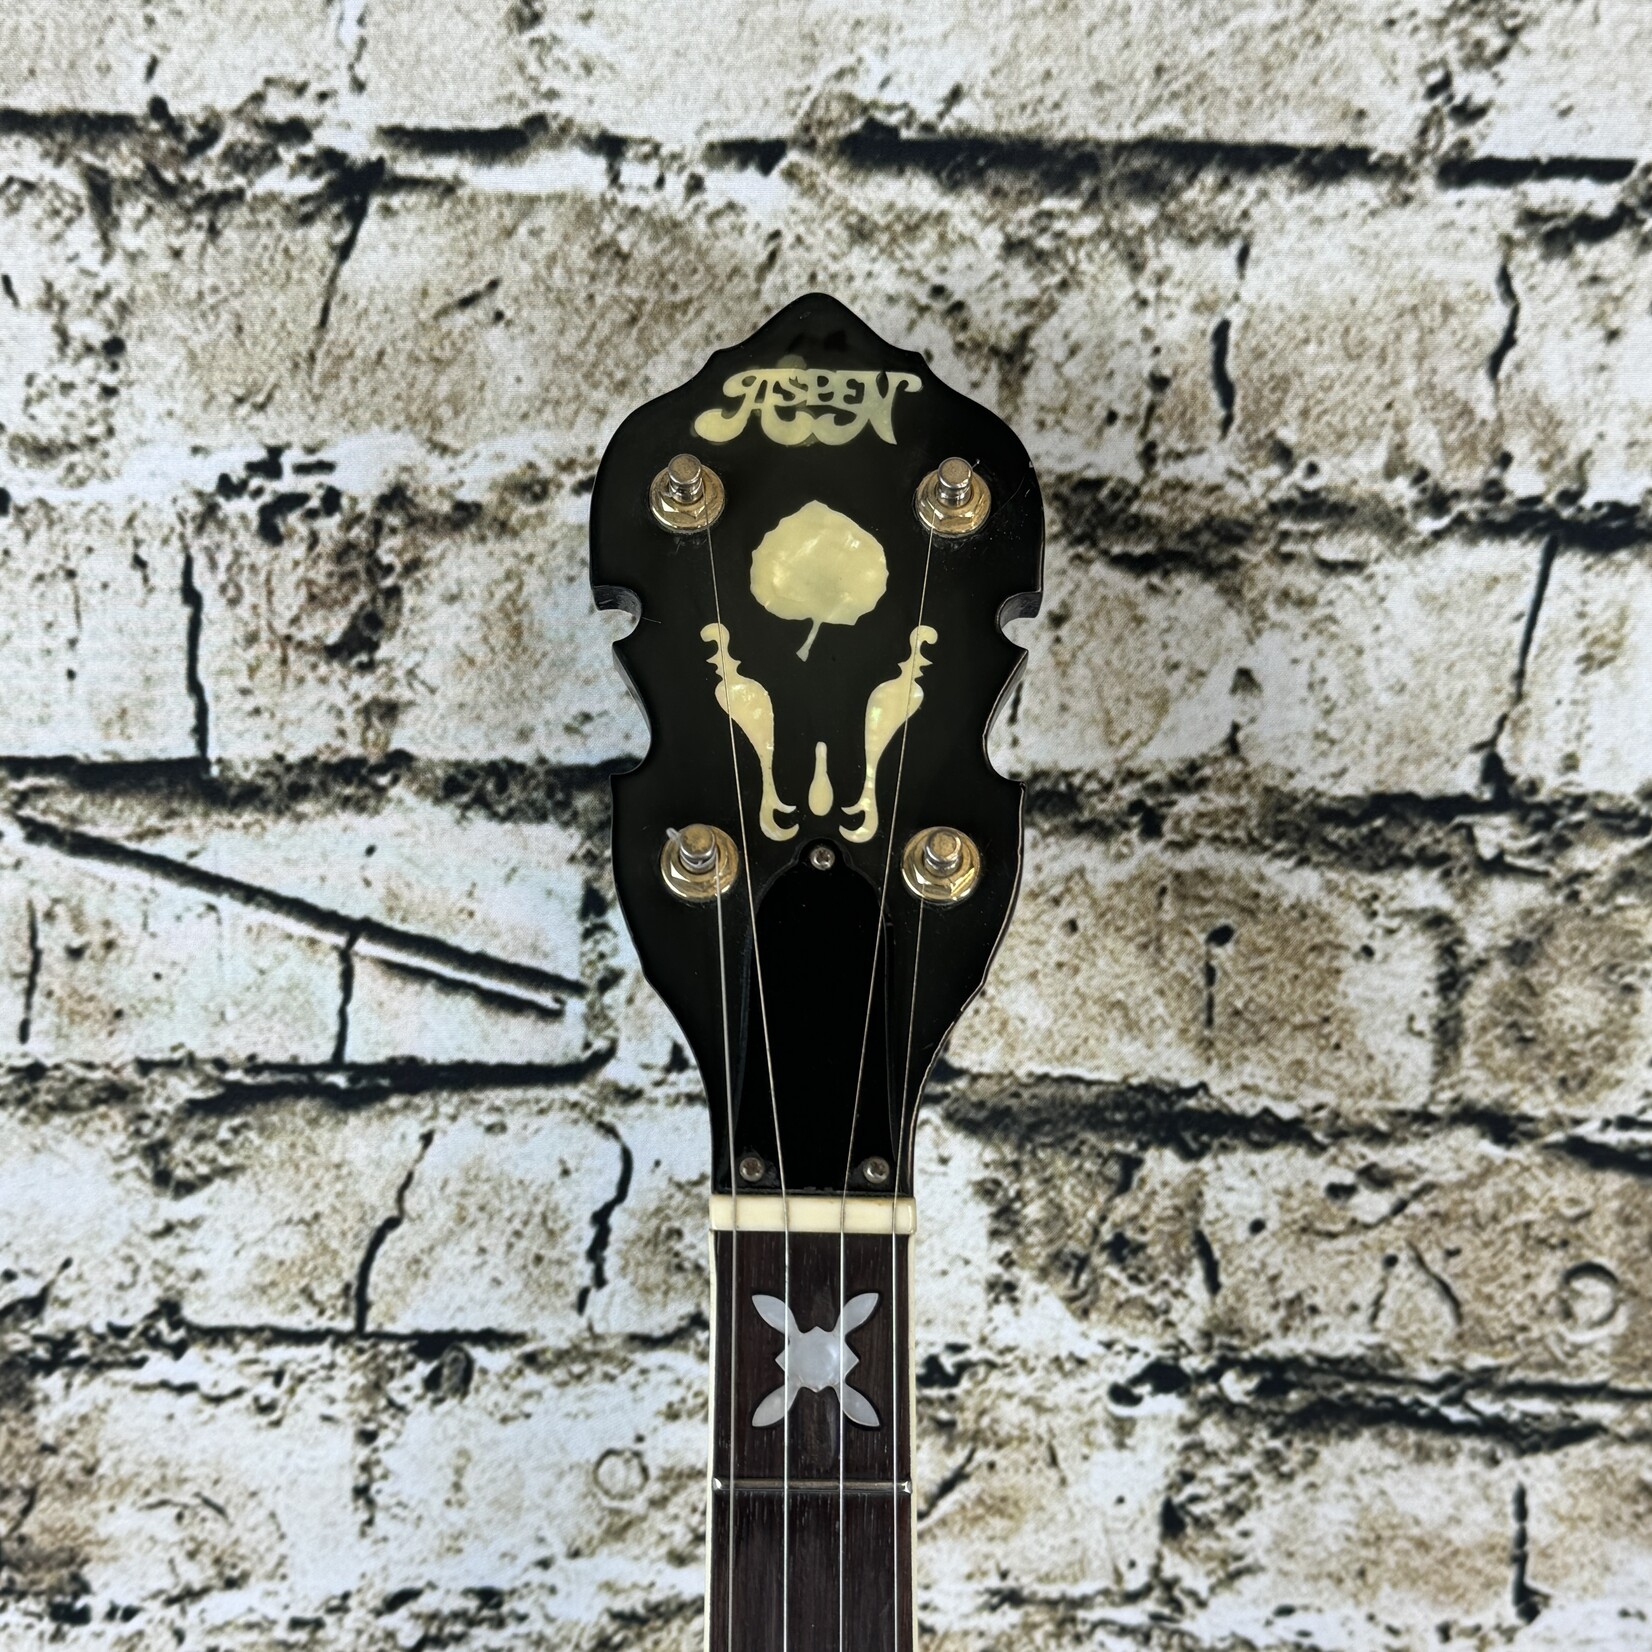 Aspen MIJ 5-String Banjo W/Case - (Used)